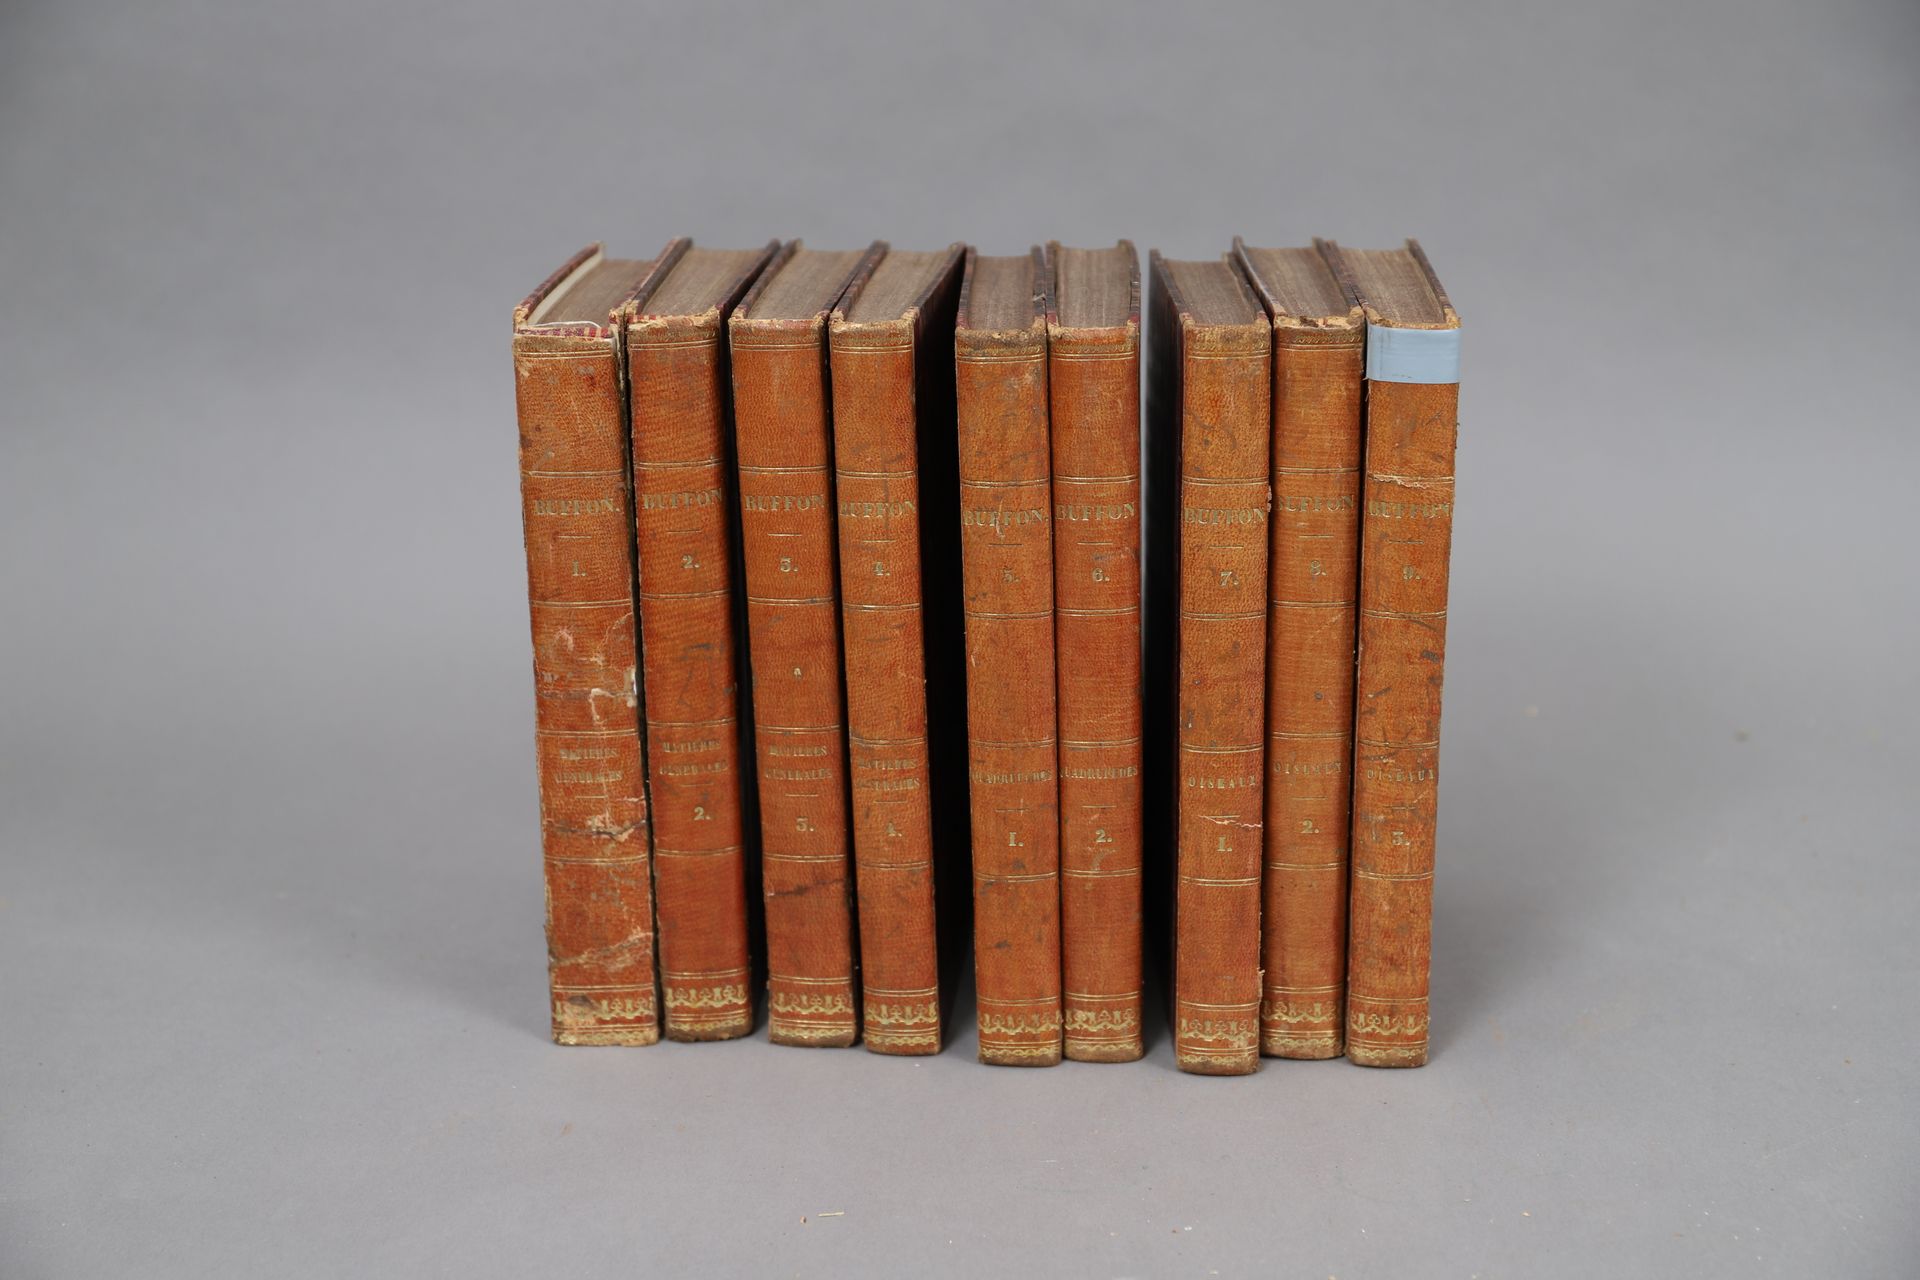 Null BUFFON'S WORKS

Paris 1835, 

9 bound volumes.